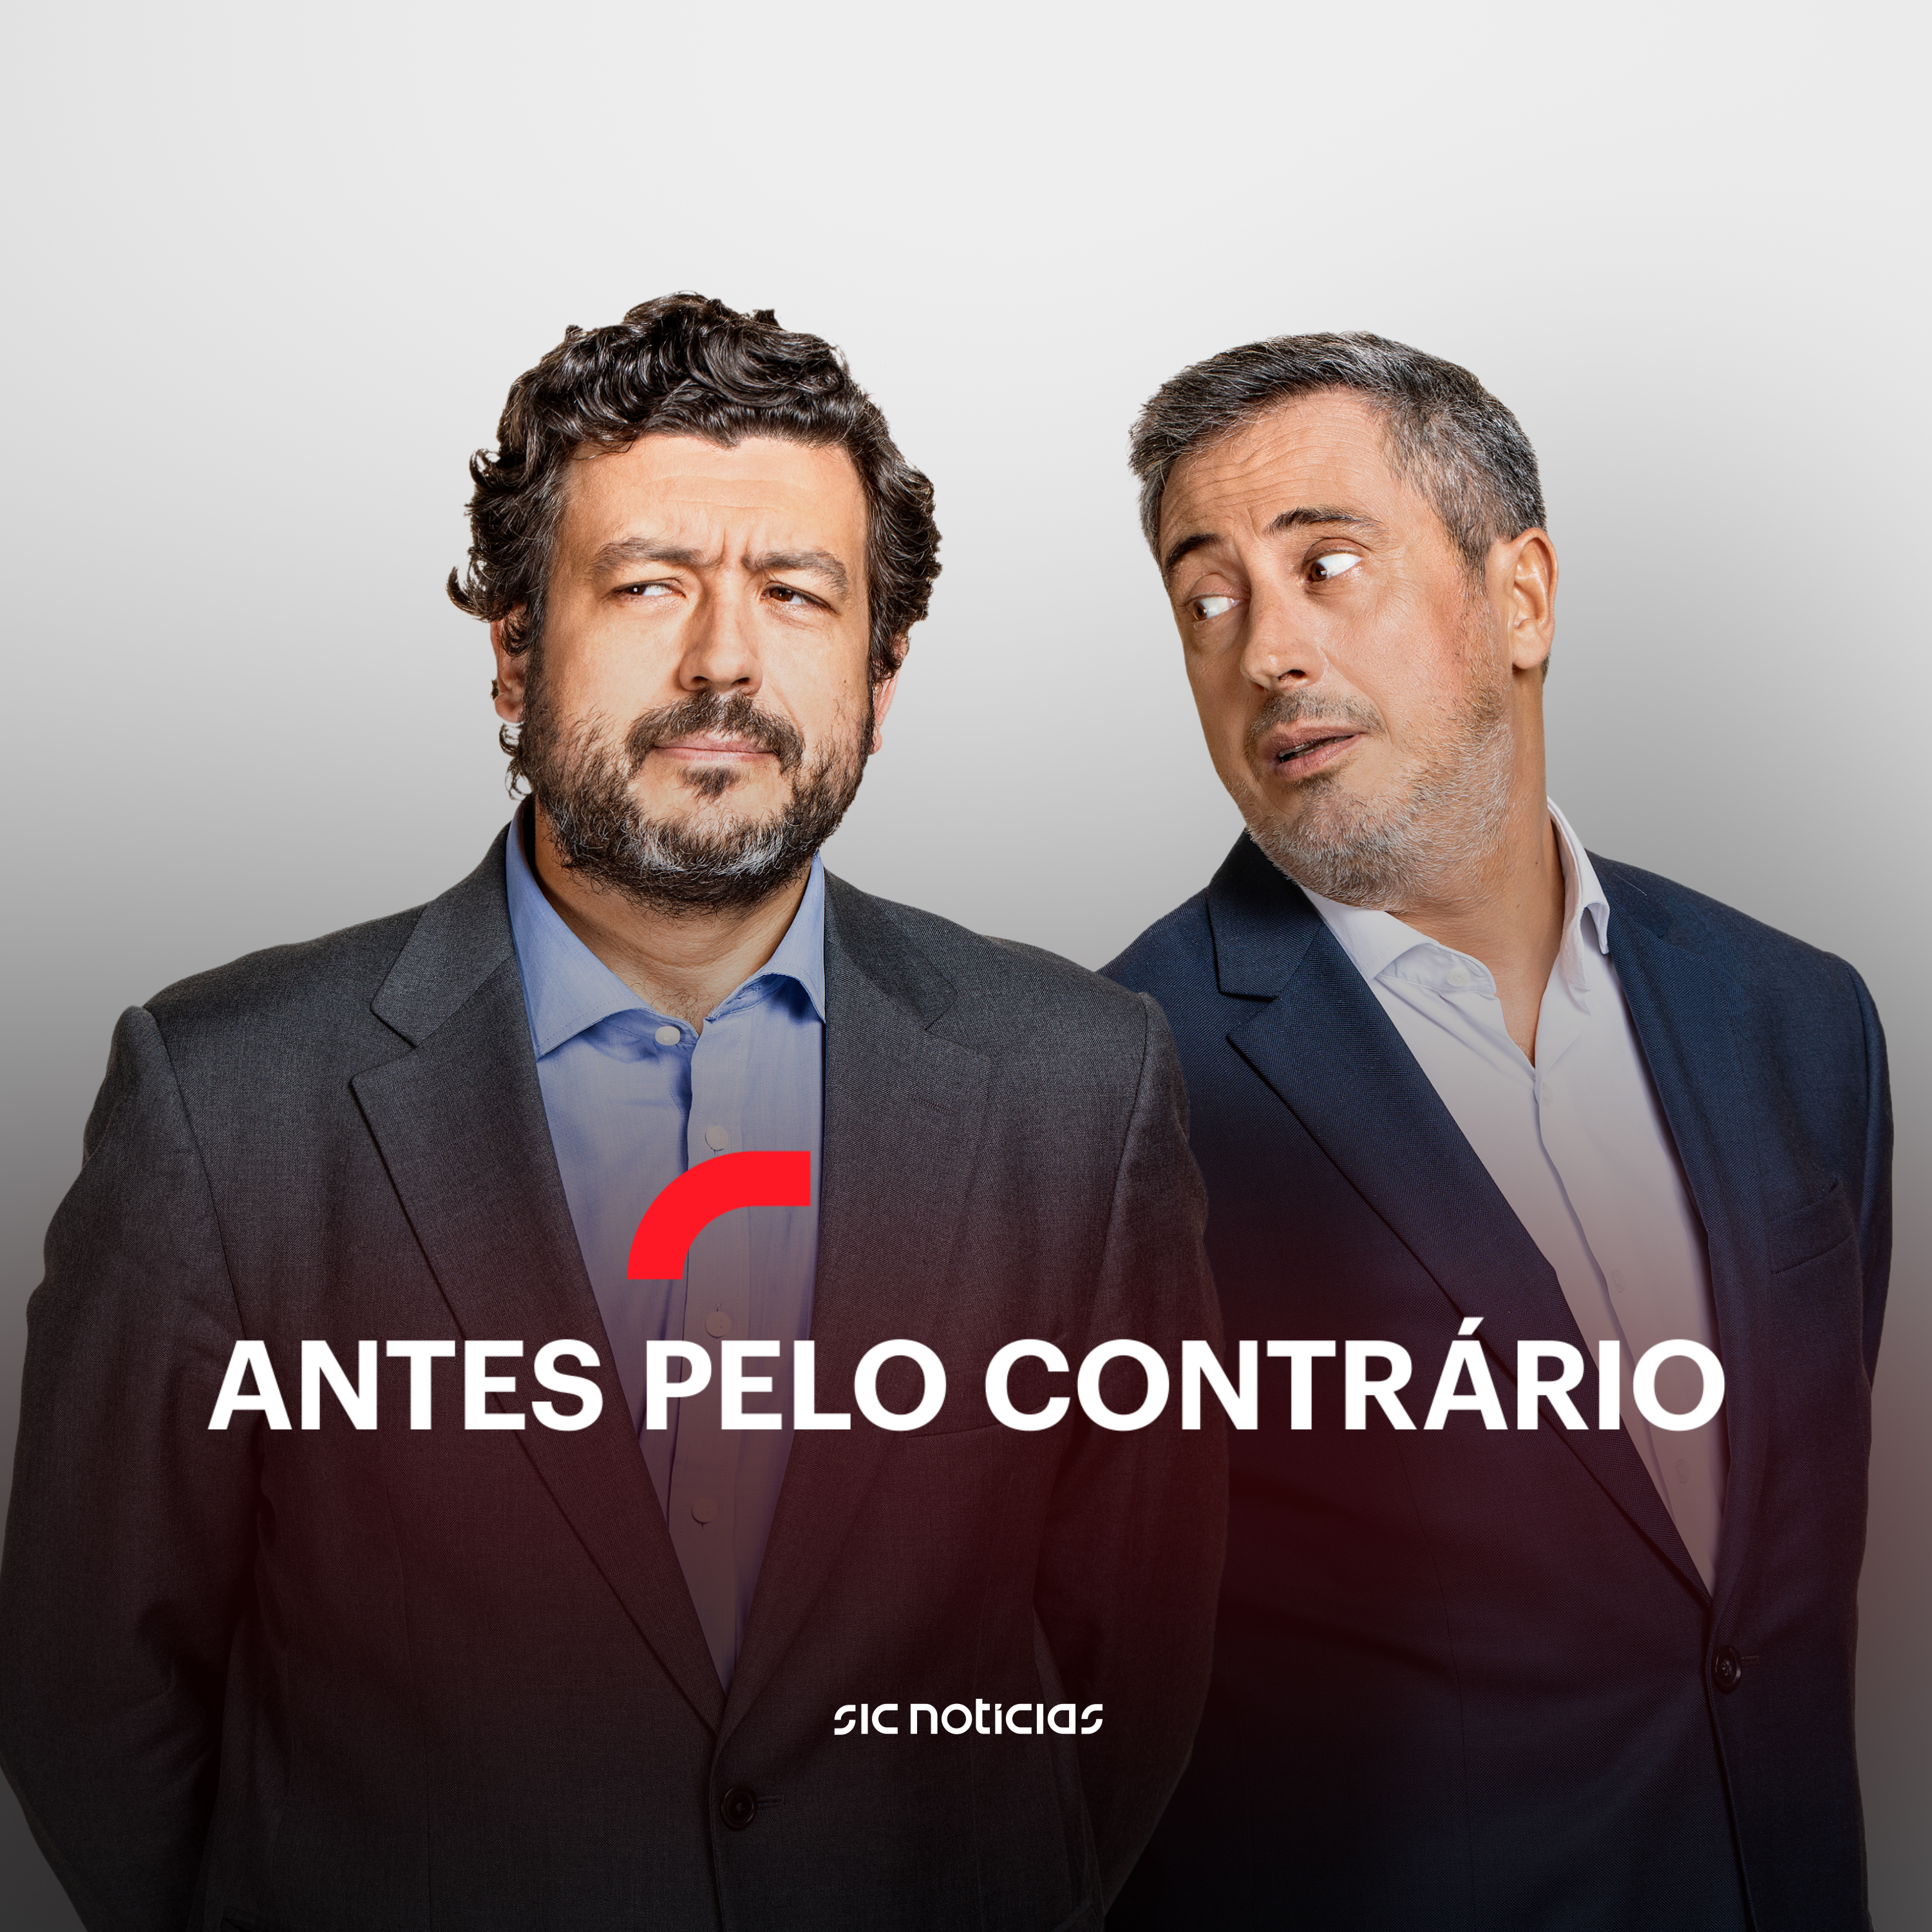 O confiante discurso de António Costa e a descontraída entrevista de Luís Montenegro